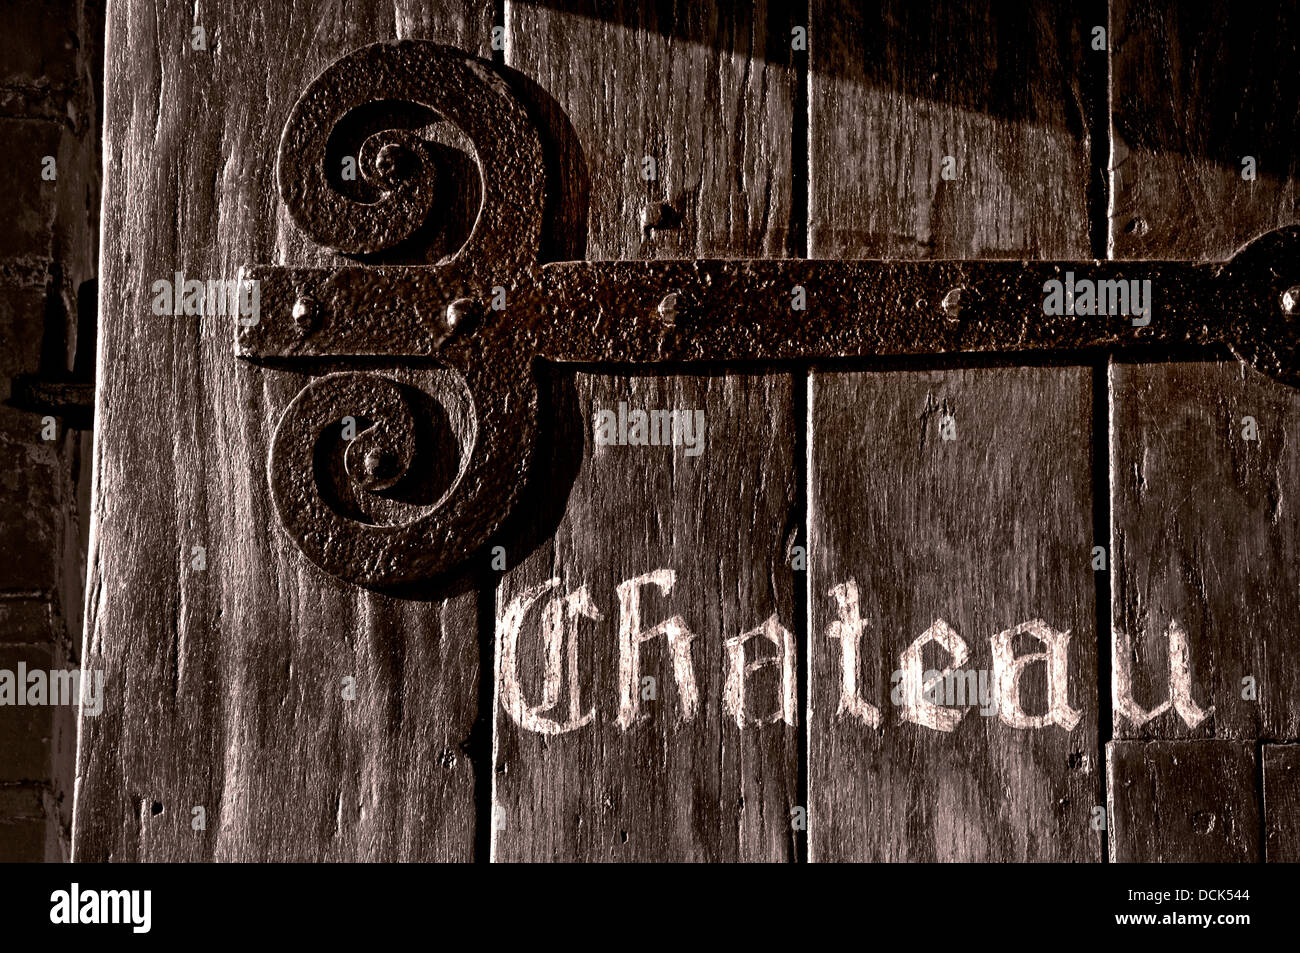 CHATEAU TÜR SCHILD B & W getönte Retro Behandlung von alten verwitterten rustikalen alten historischen Holz strukturiert Eingangstür zu typischen Französisch Chateau Stockfoto